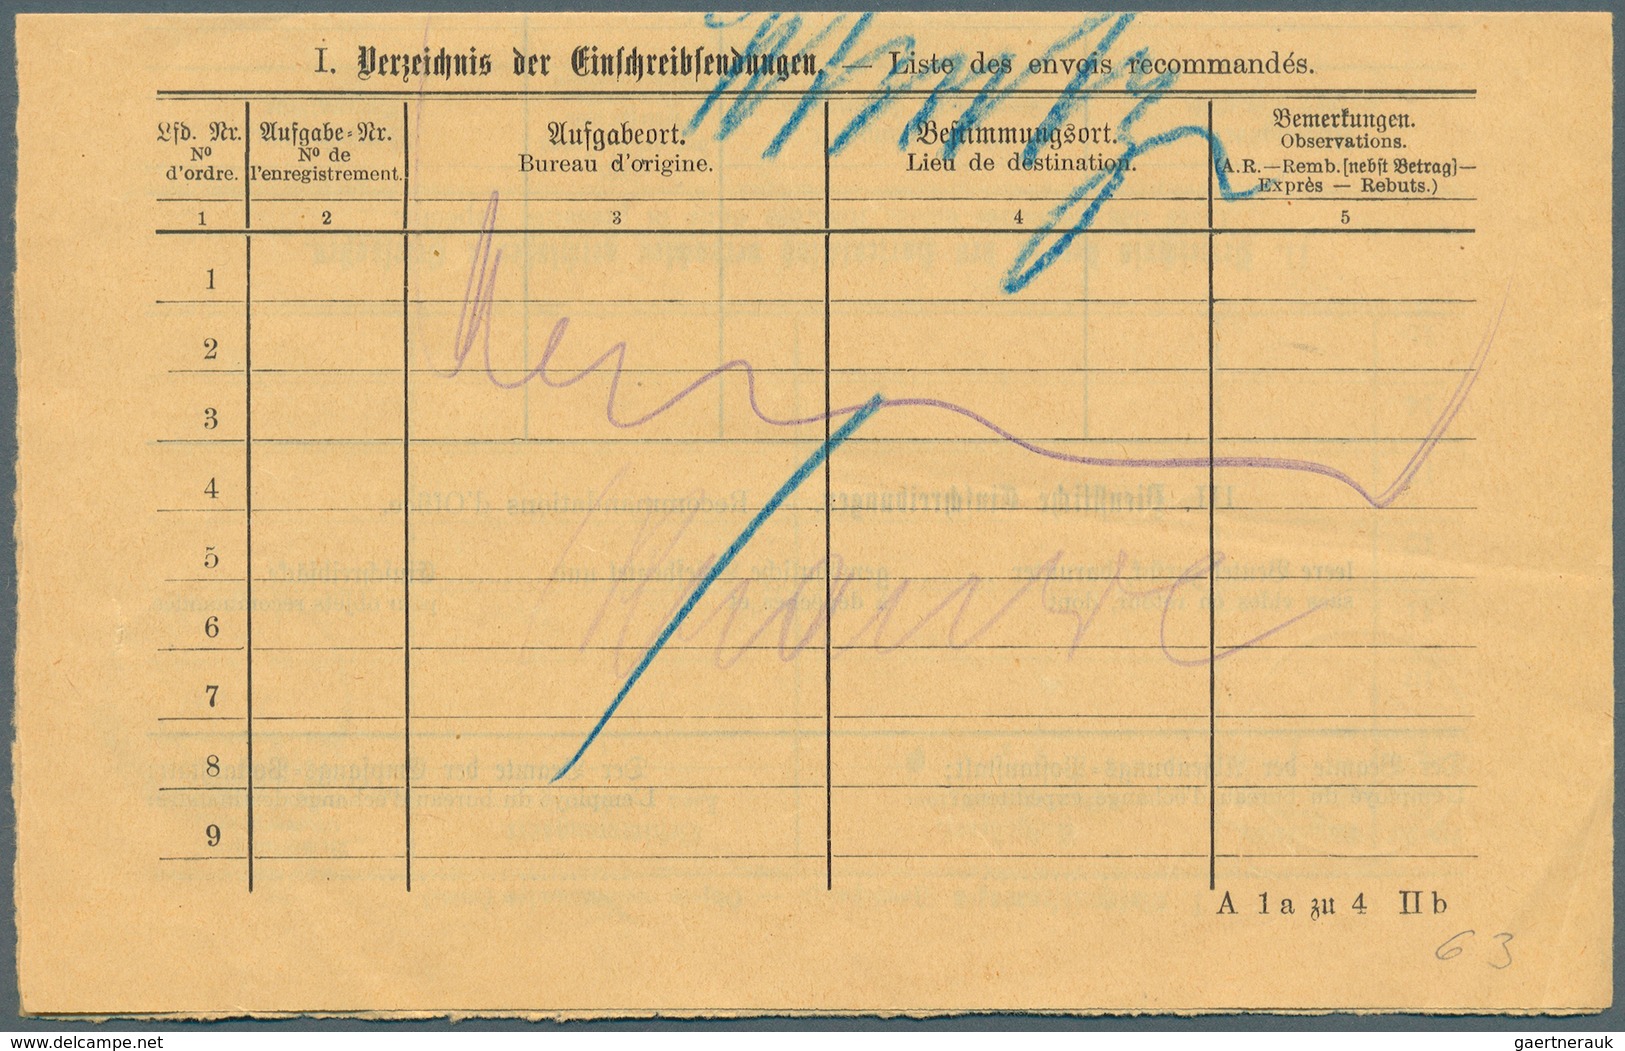 Deutsch-Südwestafrika - Besonderheiten: 1913, 9. 4., 2-sprach. Formular "Briefkarte" (Begleitschein) - German South West Africa